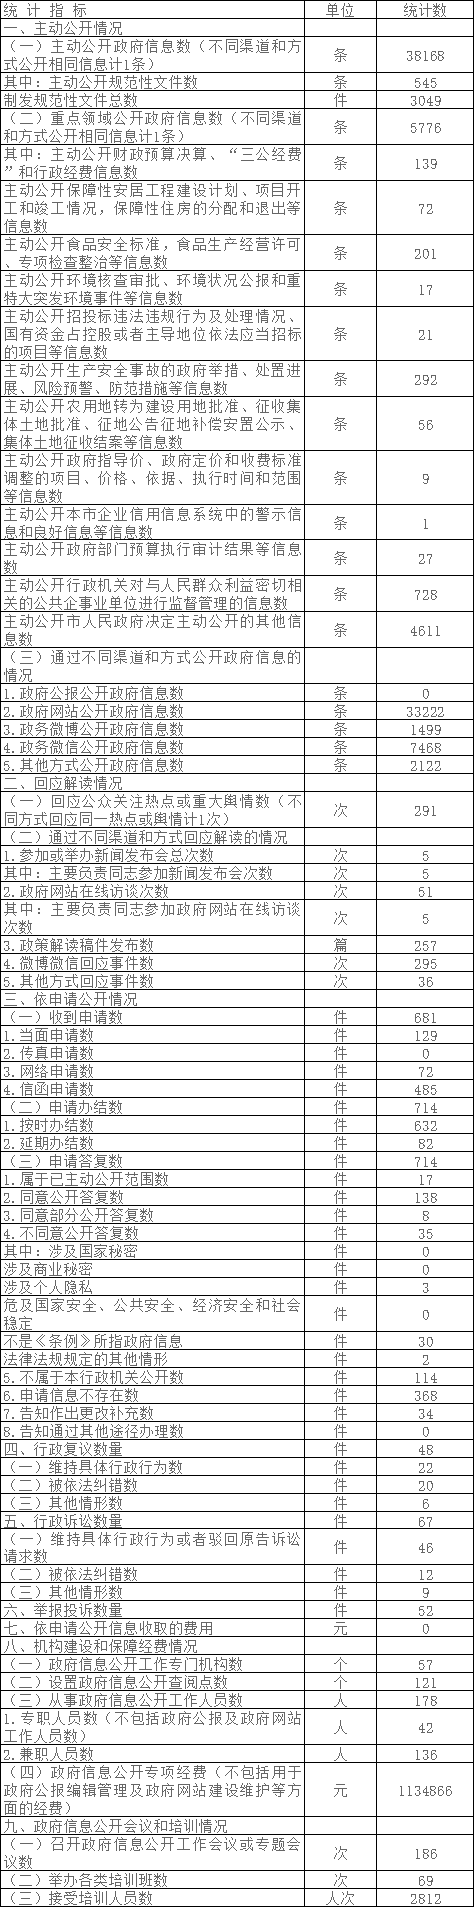 北京市大兴区人民政府政府信息公开情况统计表(2017年度)